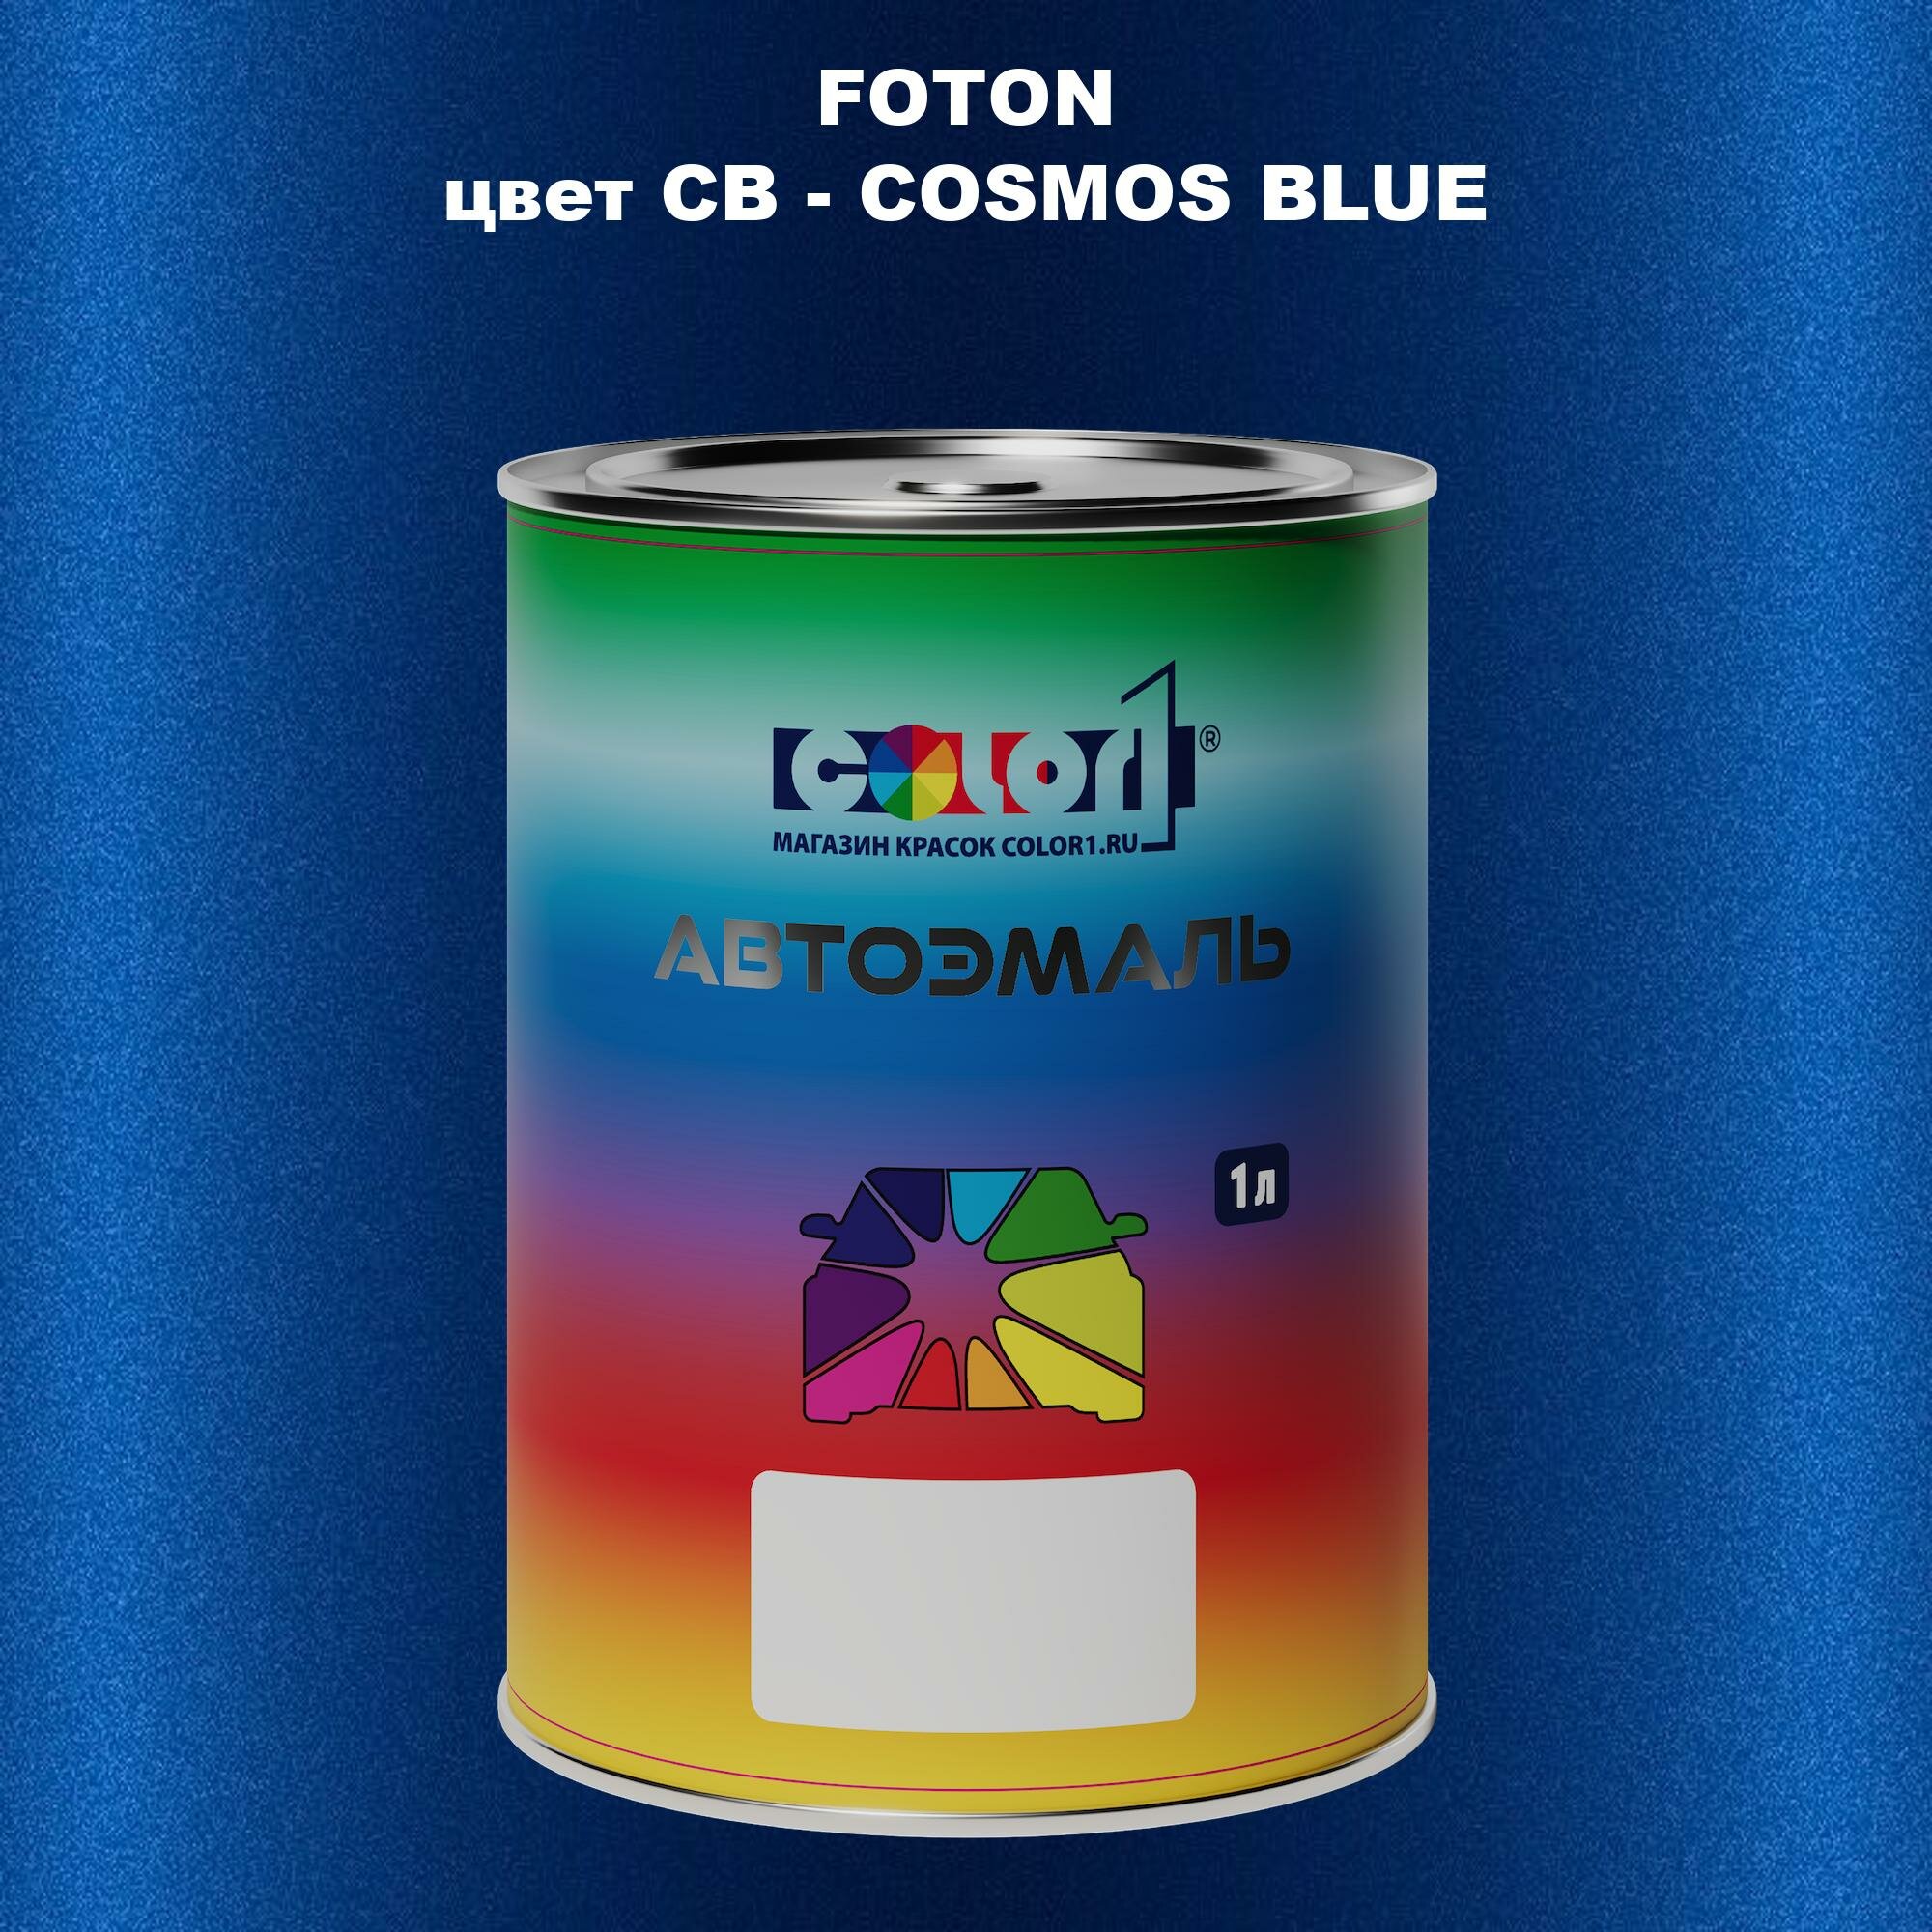 Автомобильная краска COLOR1 для FOTON цвет CB - COSMOS BLUE